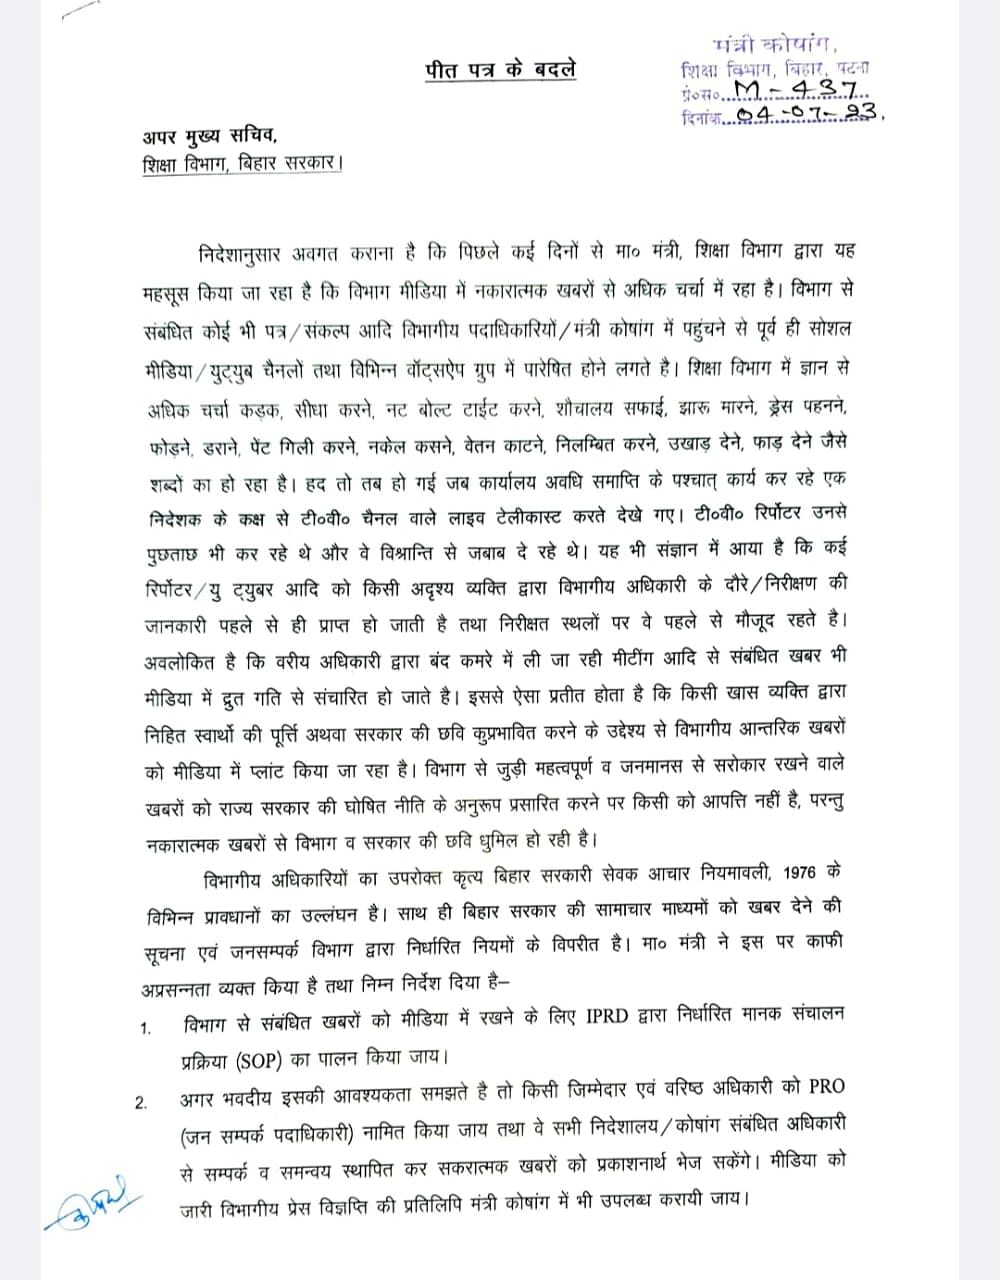 Bihar News: शिक्षा मंत्री के आप्त सचिव डॉ. कृष्णा नंद यादव के शिक्षा विभाग में प्रवेश पर रोक लगा दी गई है.